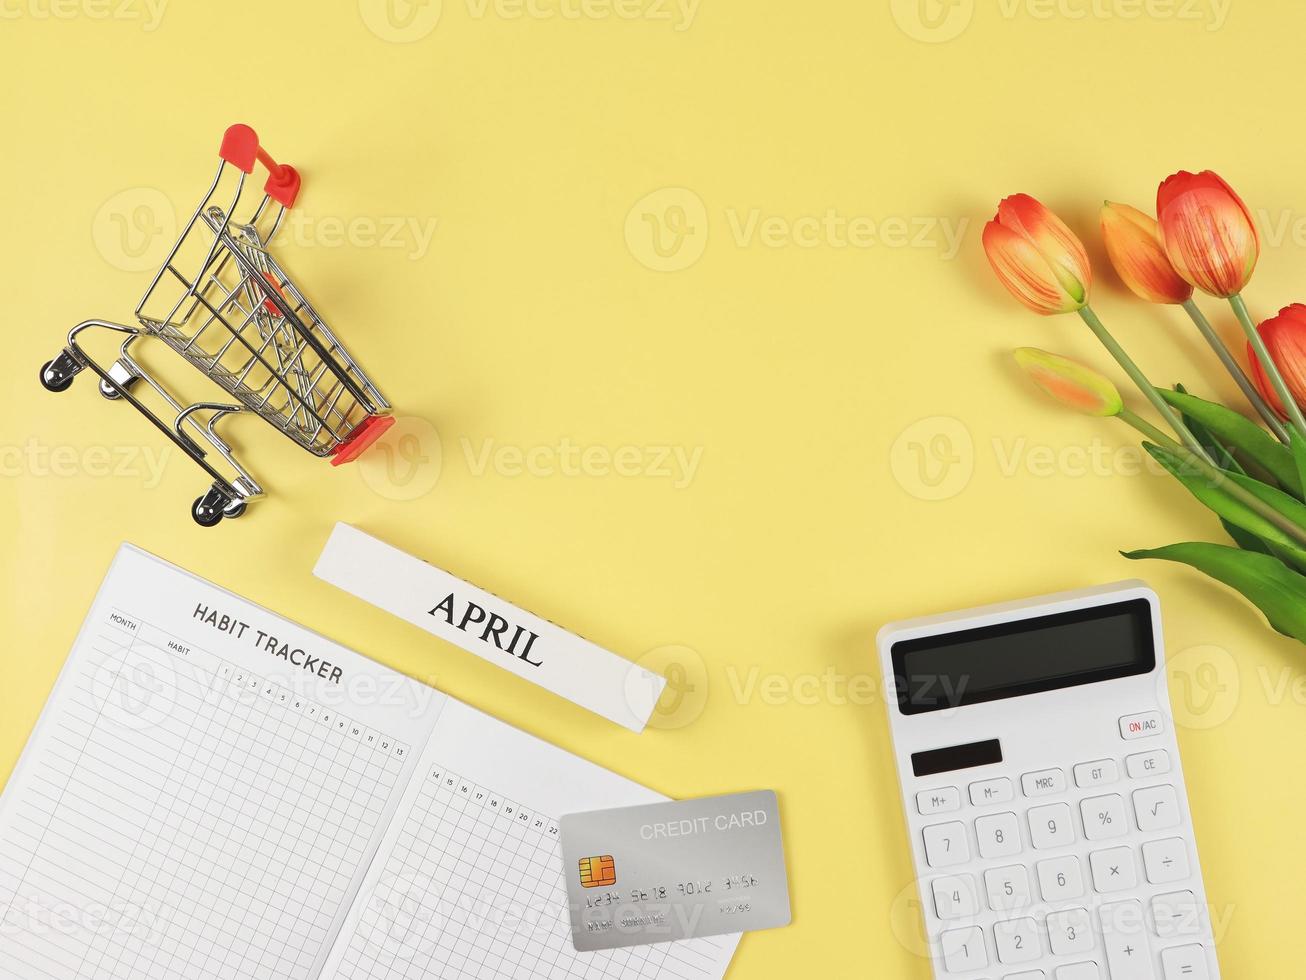 eben Layout von Gewohnheit Tracker Buch, Weiß Taschenrechner, Anerkennung Karte, Einkaufen Wagen oder Einkaufen Wagen und Tulpen auf Gelb Hintergrund. foto